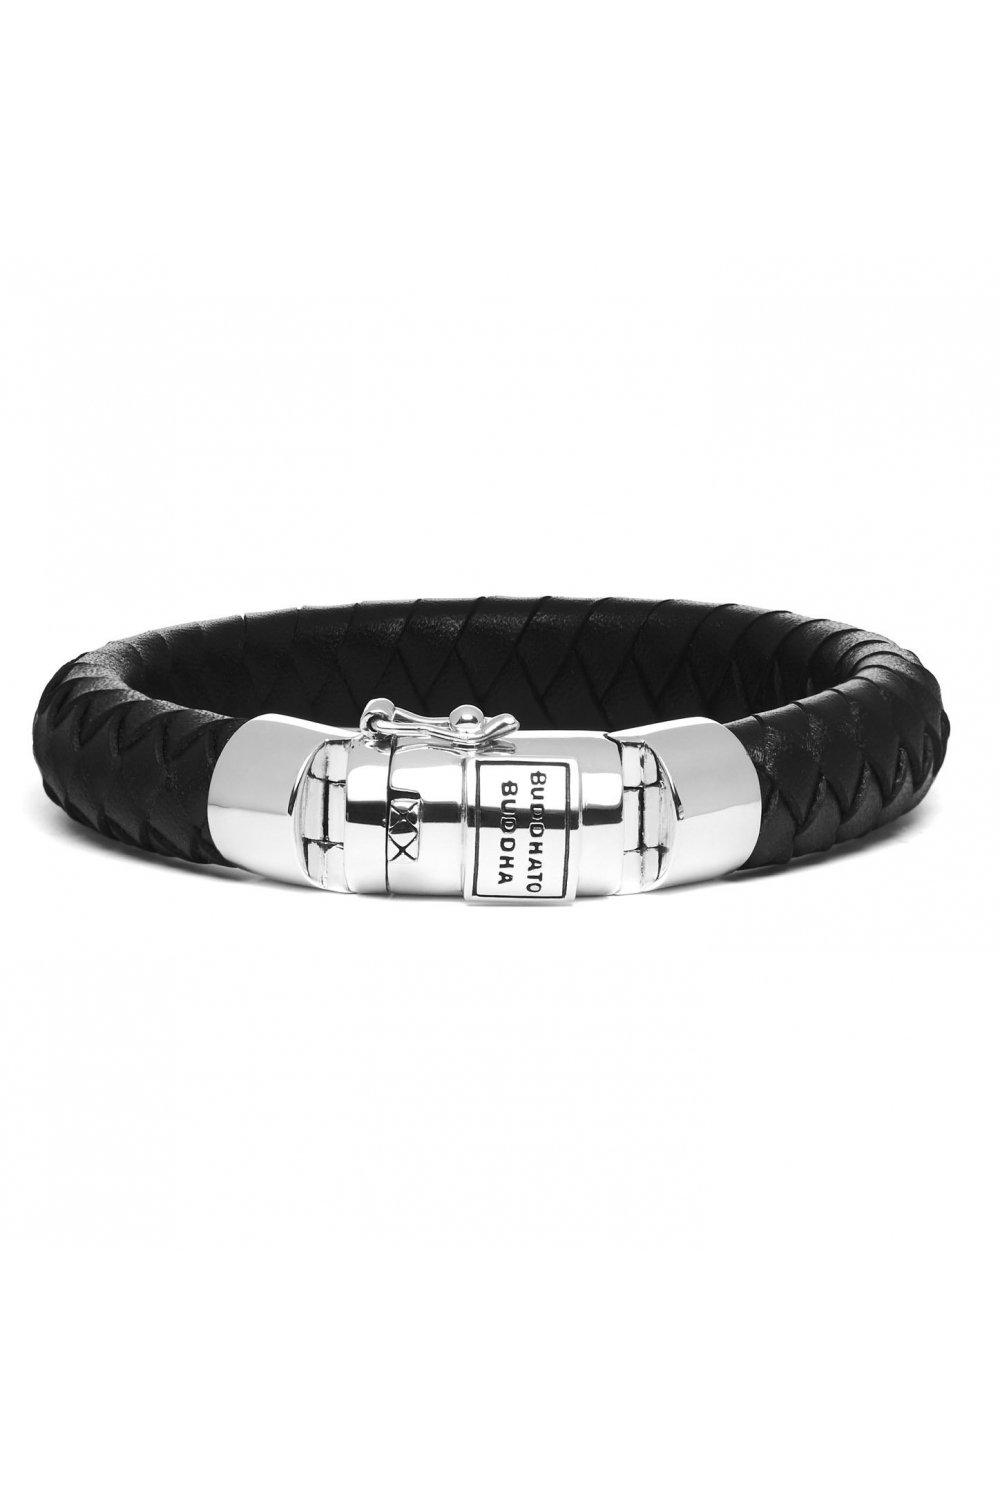 ben sterling silver fashion bracelet - 001j055440314